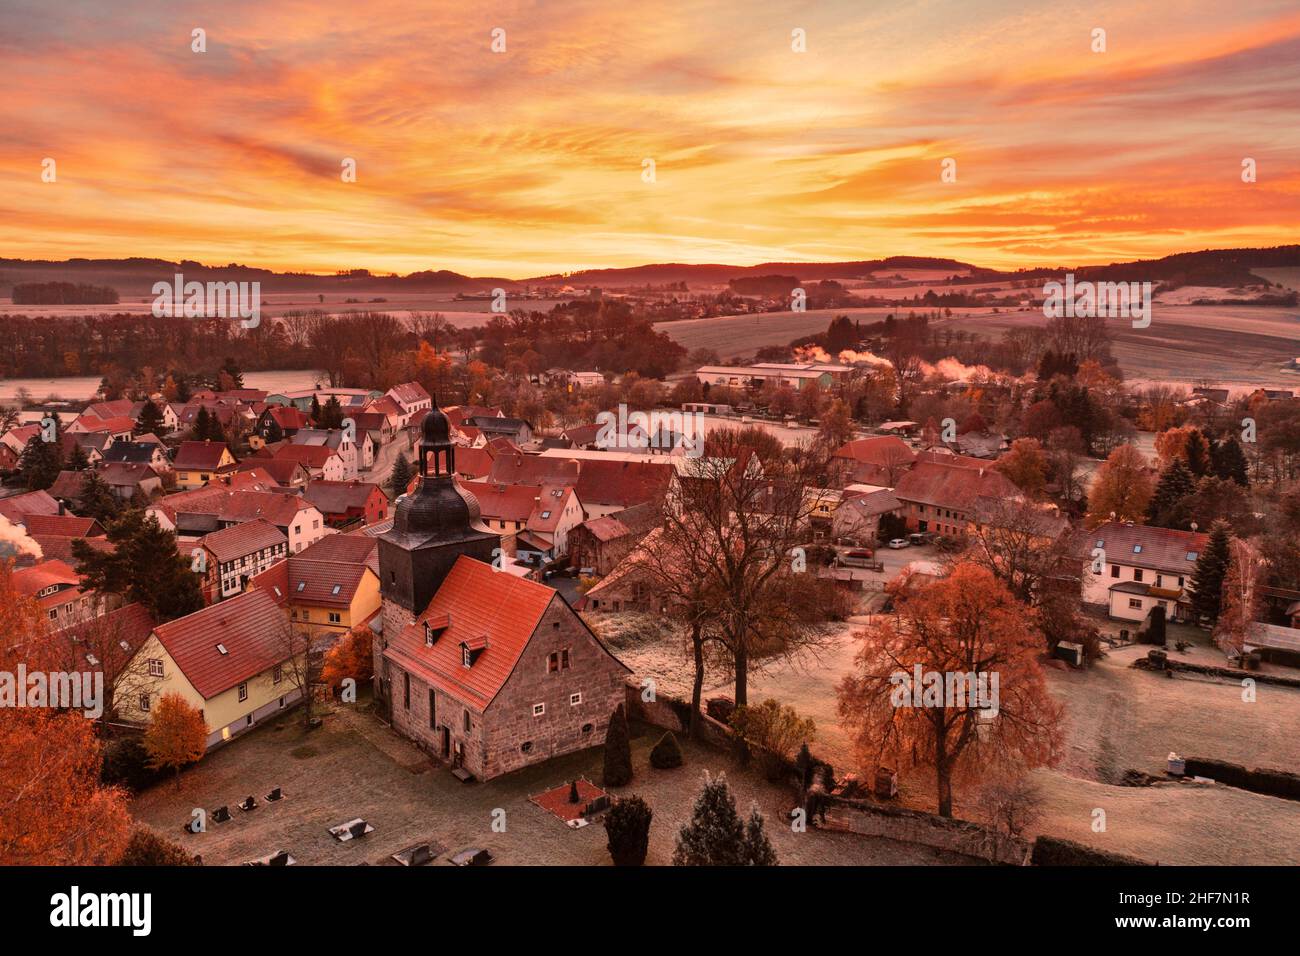 Germania, Turingia, Stadtilm, distretto Griesheim, chiesa del villaggio, villaggio, alba, panoramica, retroilluminazione Foto Stock